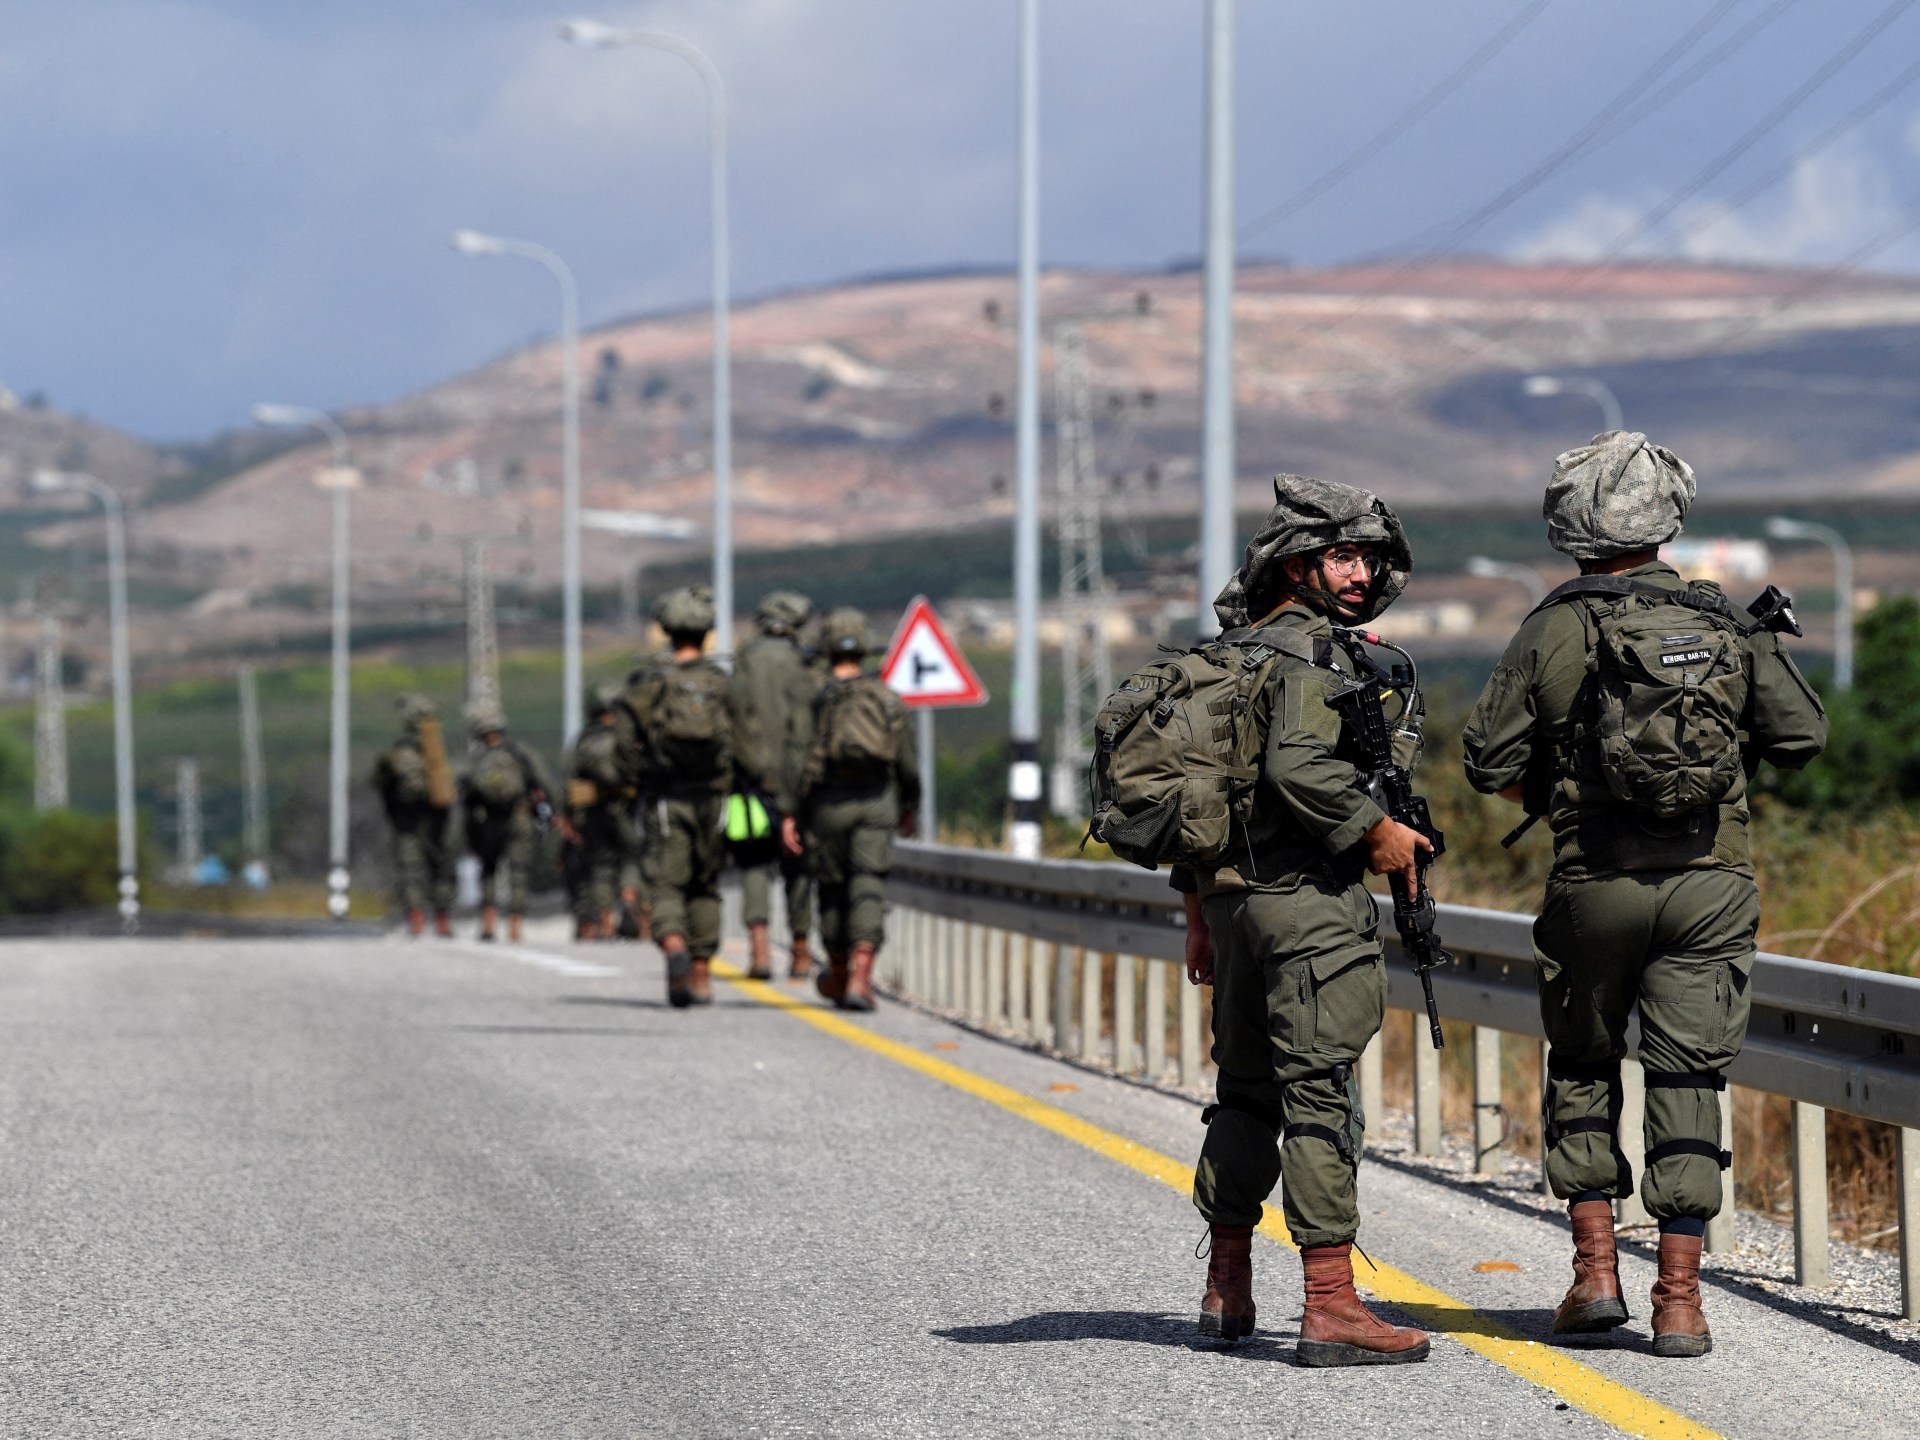 جيش الاحتلال يشكل لواء جديدا للشمال وتجدد الاشتباكات بين حزب الله وإسرائيل | أخبار – البوكس نيوز